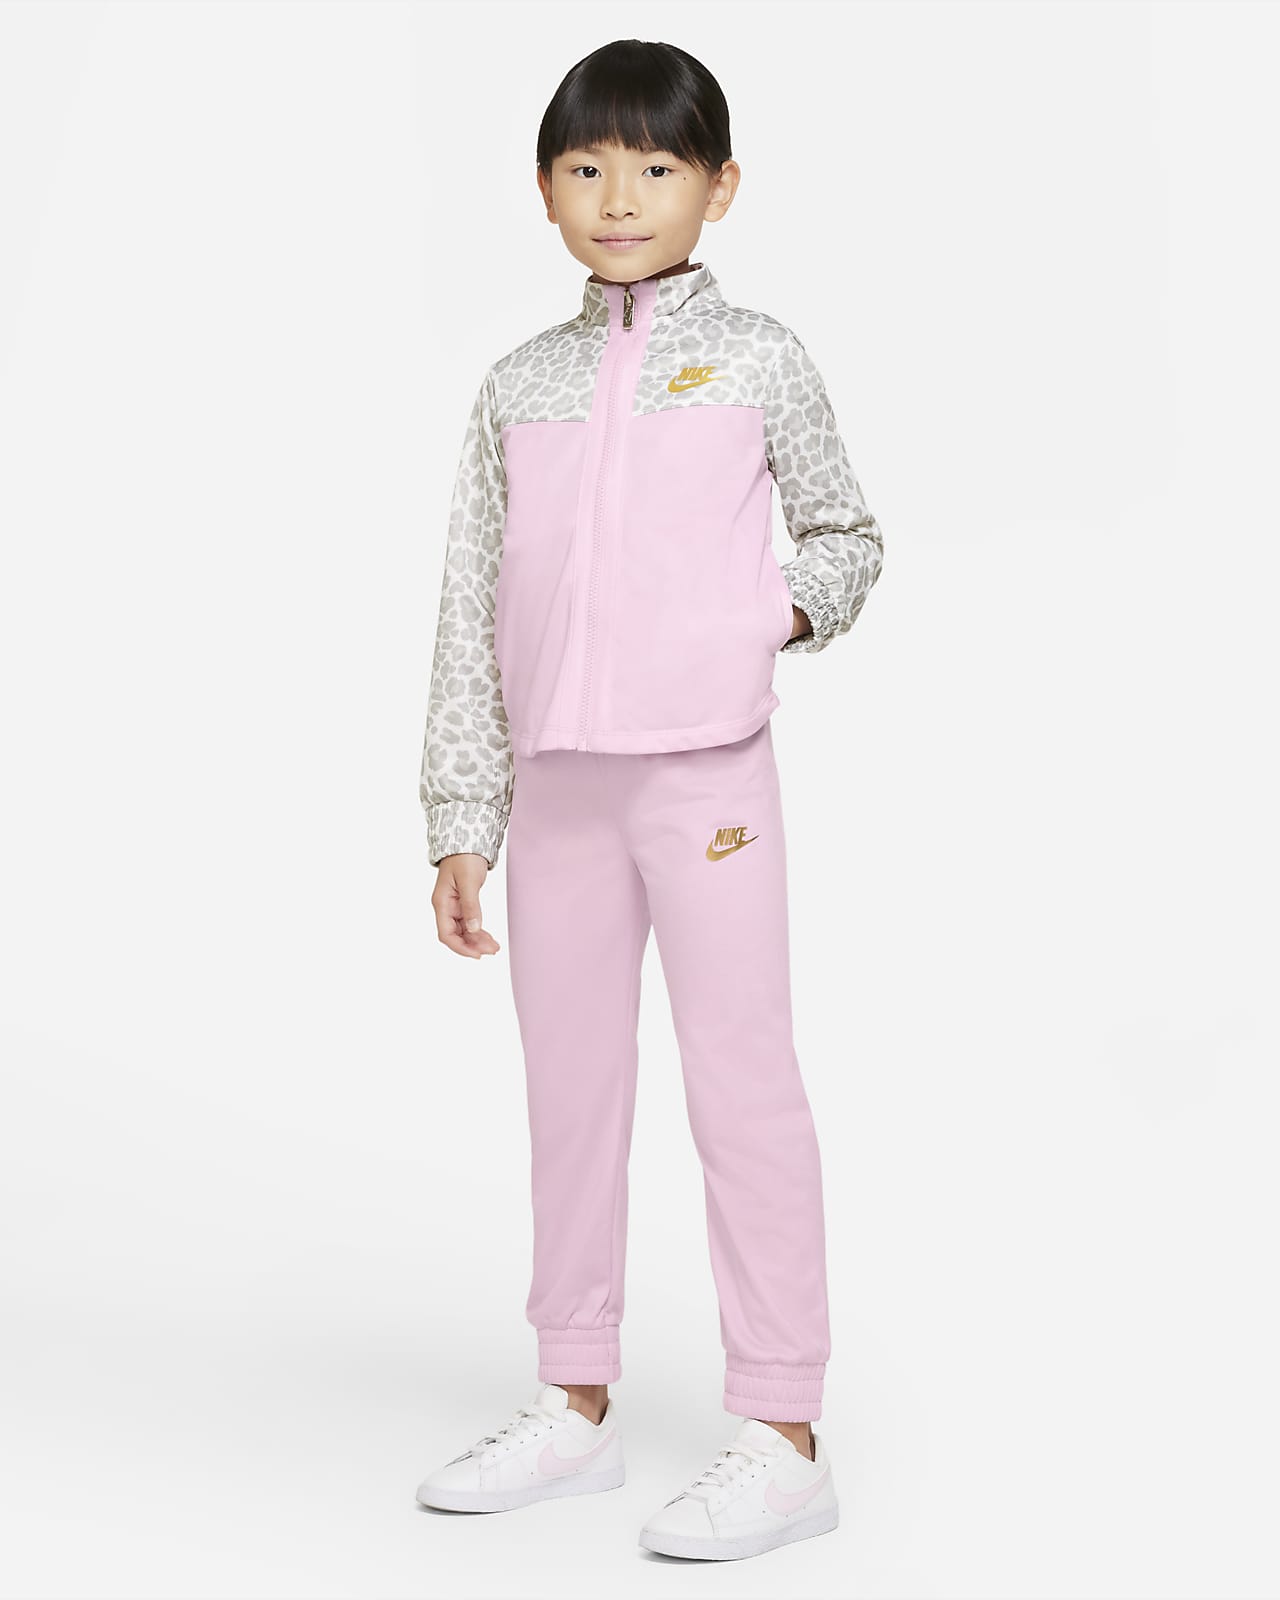 Φόρμα Nike για μικρά παιδιά